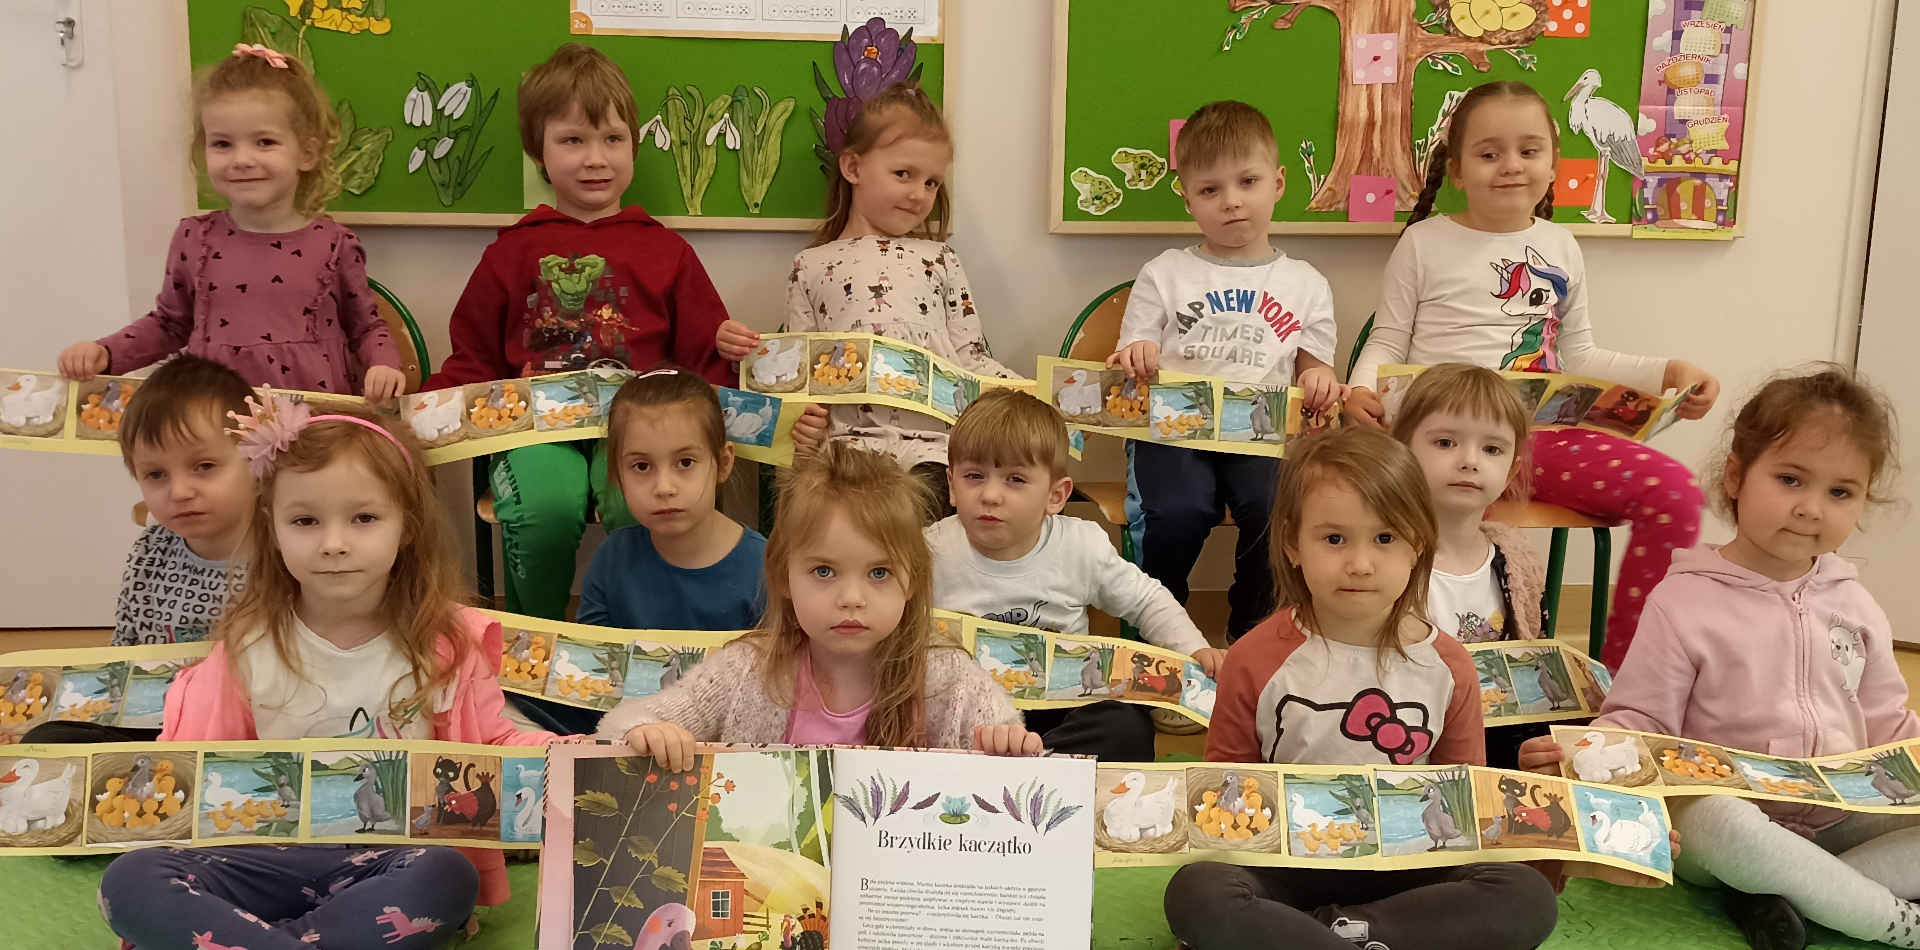 Dzieci z książką o brzydkim kaczątku